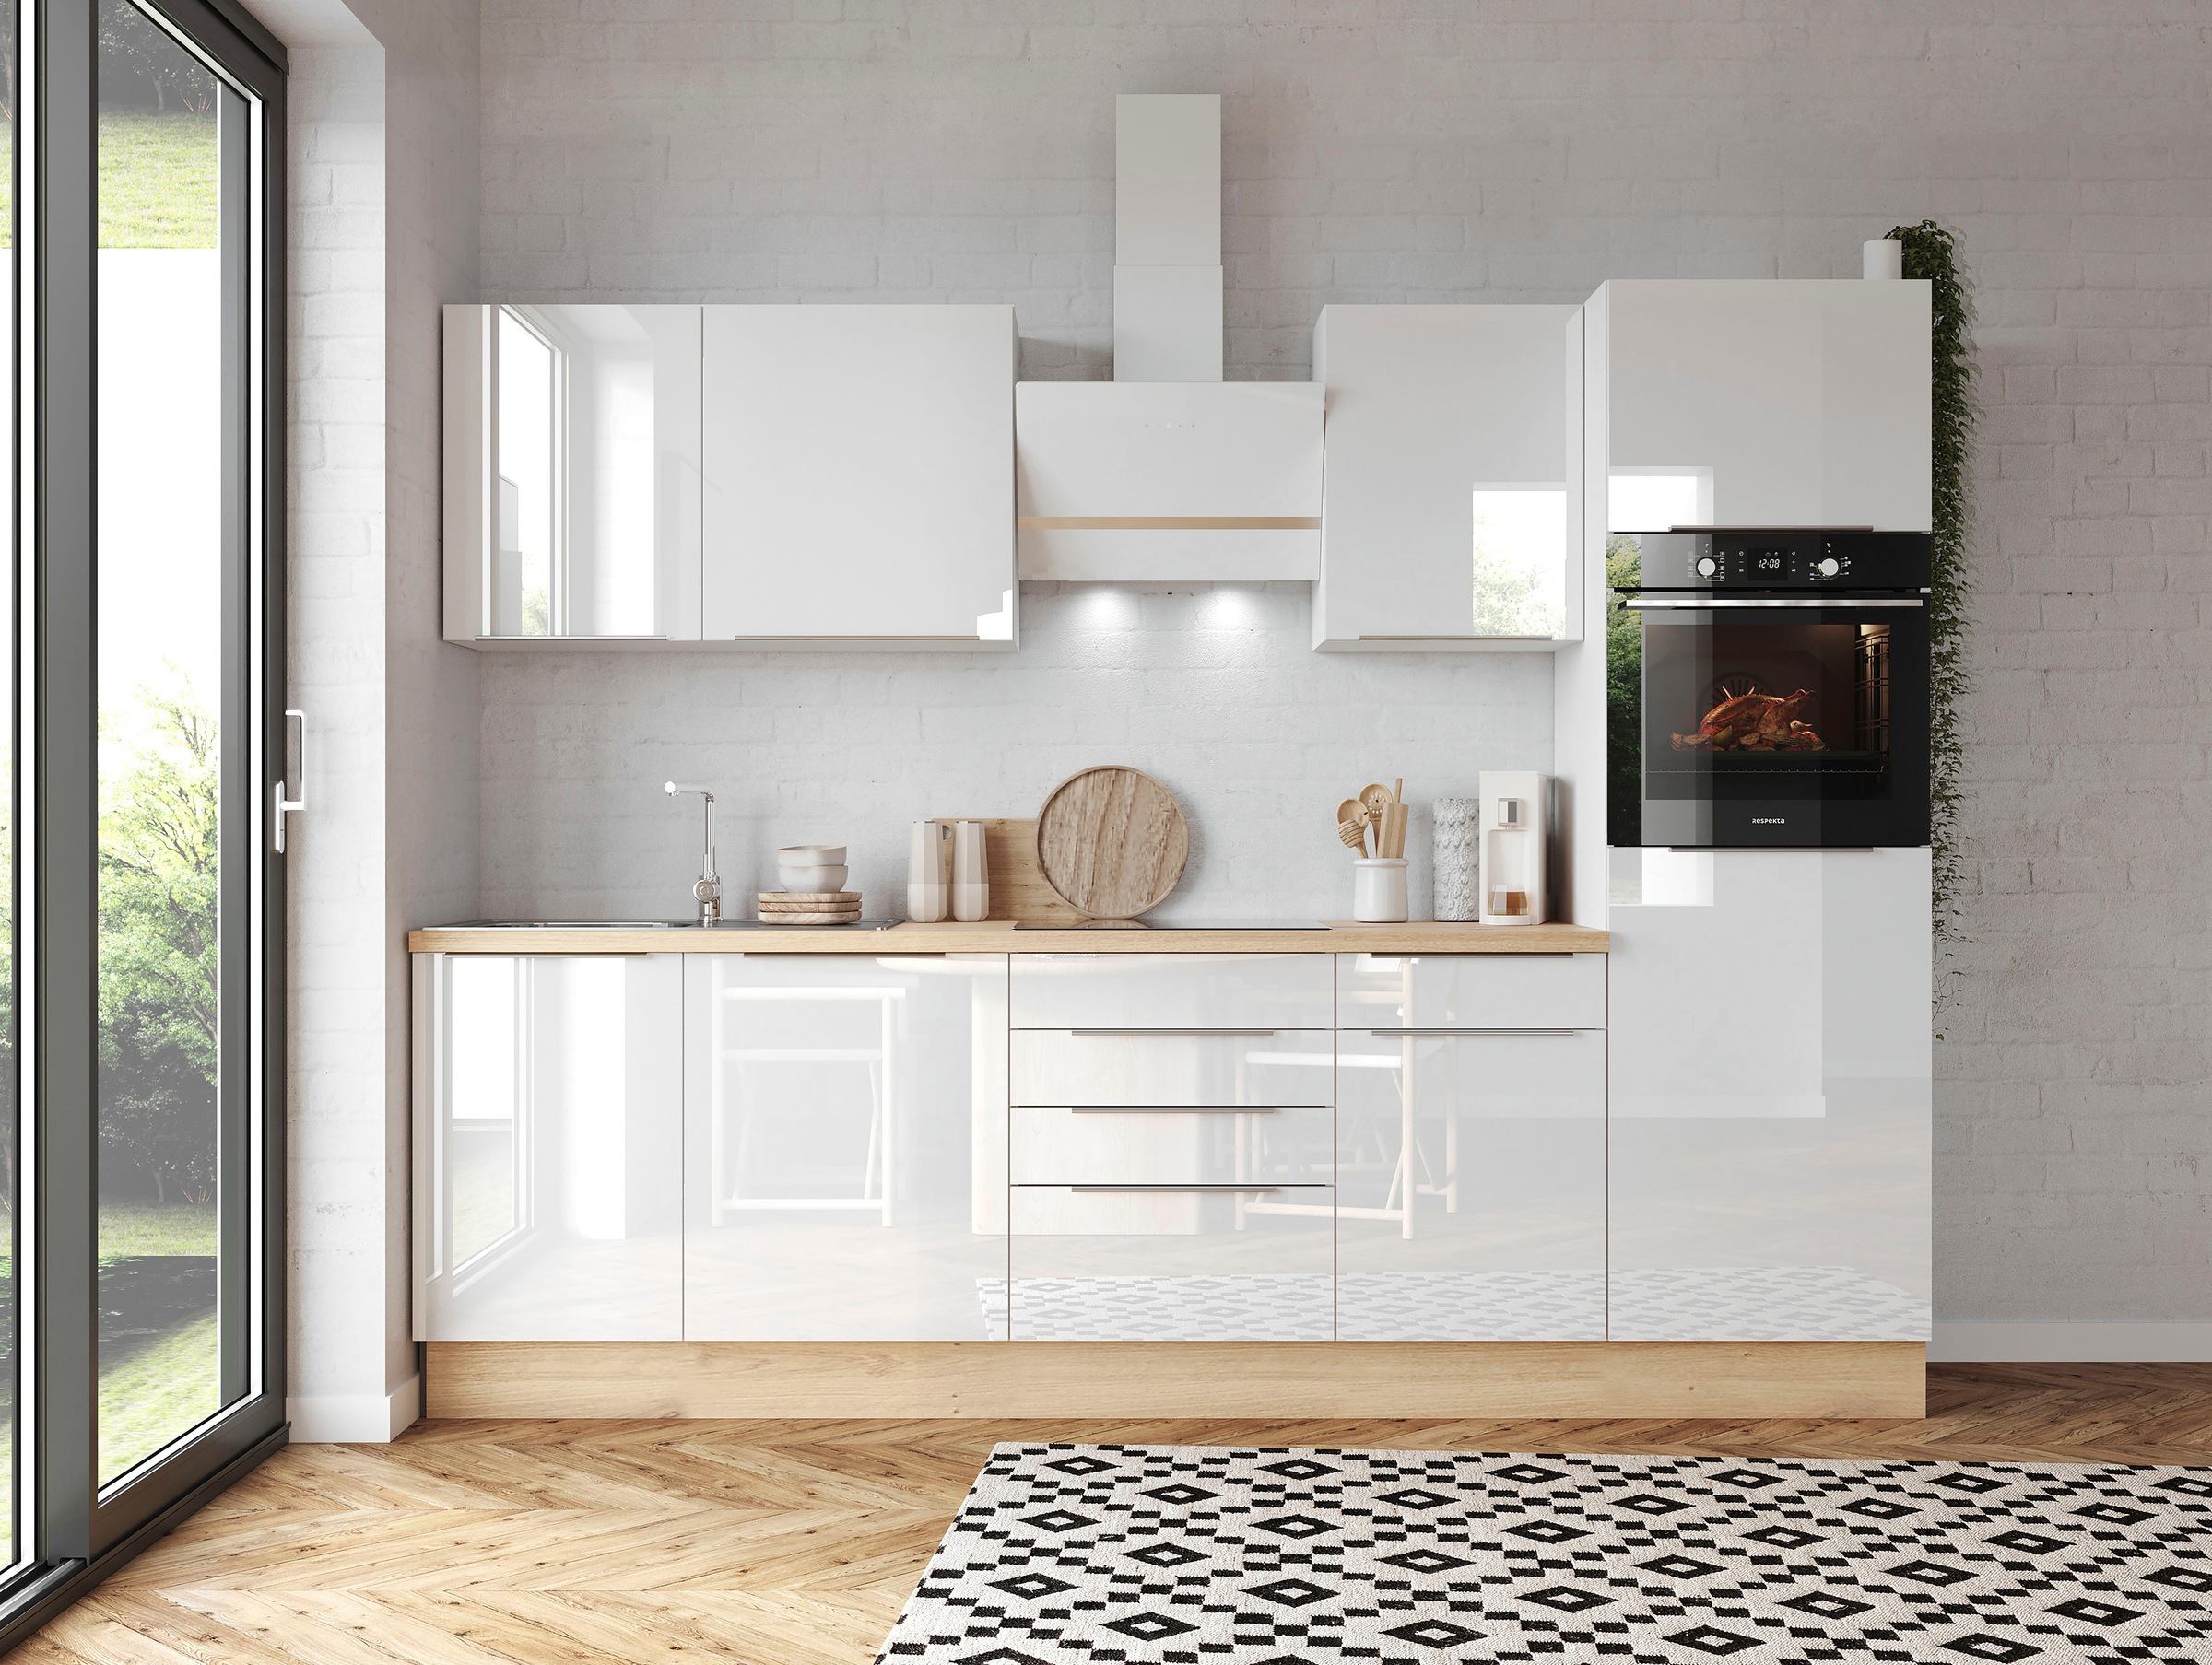 RESPEKTA Küchenzeile »Safado aus der Serie Marleen«, Breite 280 cm, hochwertige Ausstattung wie Soft Close Funktion